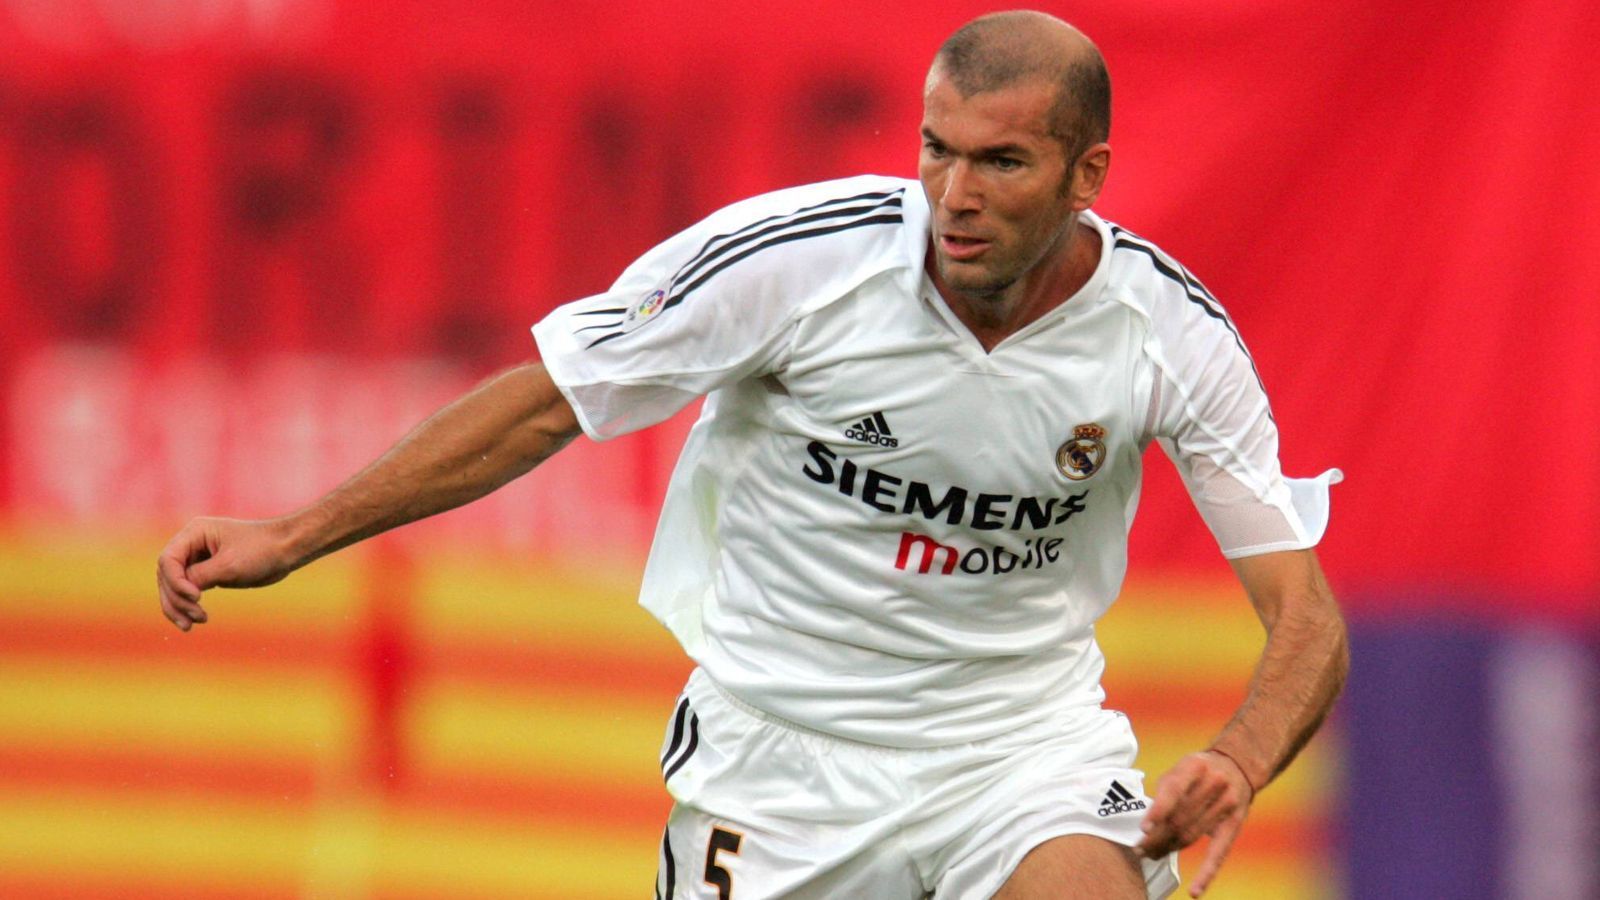 
                <strong>Zinedine Zidane</strong><br>
                Zusammen mit Luis Figo bildete Zidane Anfang der 2000er Jahre ein Traumduo im Mittelfeld. Drei Mal wurde der Franzose zum Weltfußballer gewählt, in Madrid wurde er endgültig zum Weltstar, beendete dort 2006 auch seine Karriere. Heute trainiert er Real, gewann unter anderem dreimal in Folge die Champions League.
              